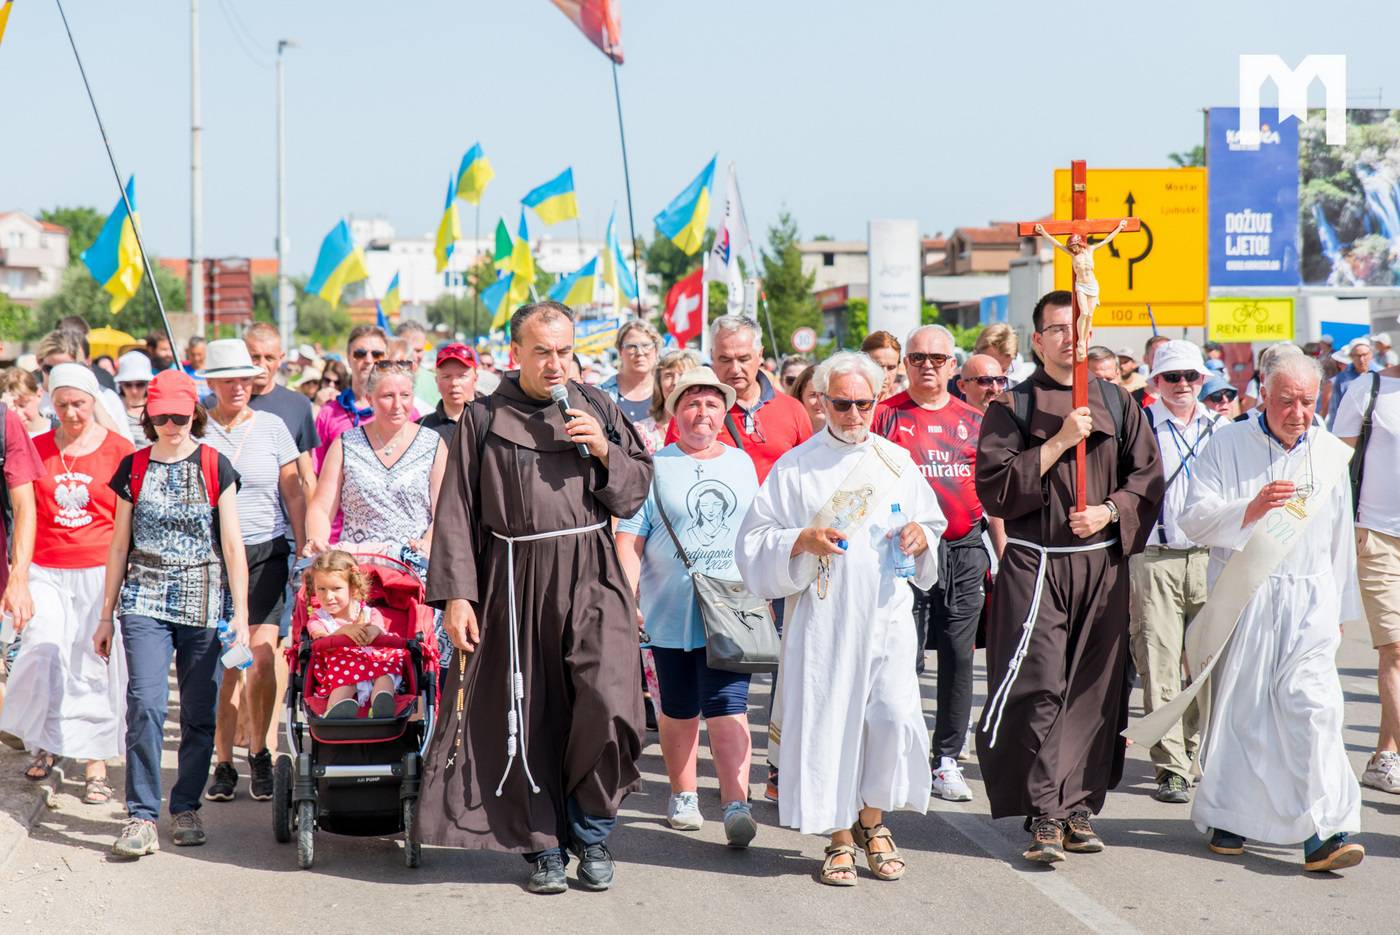 Tisuće ljudi iz cijeloga svijeta u Međugorju je molilo za mir, posebno su brojni bili Ukrajinci